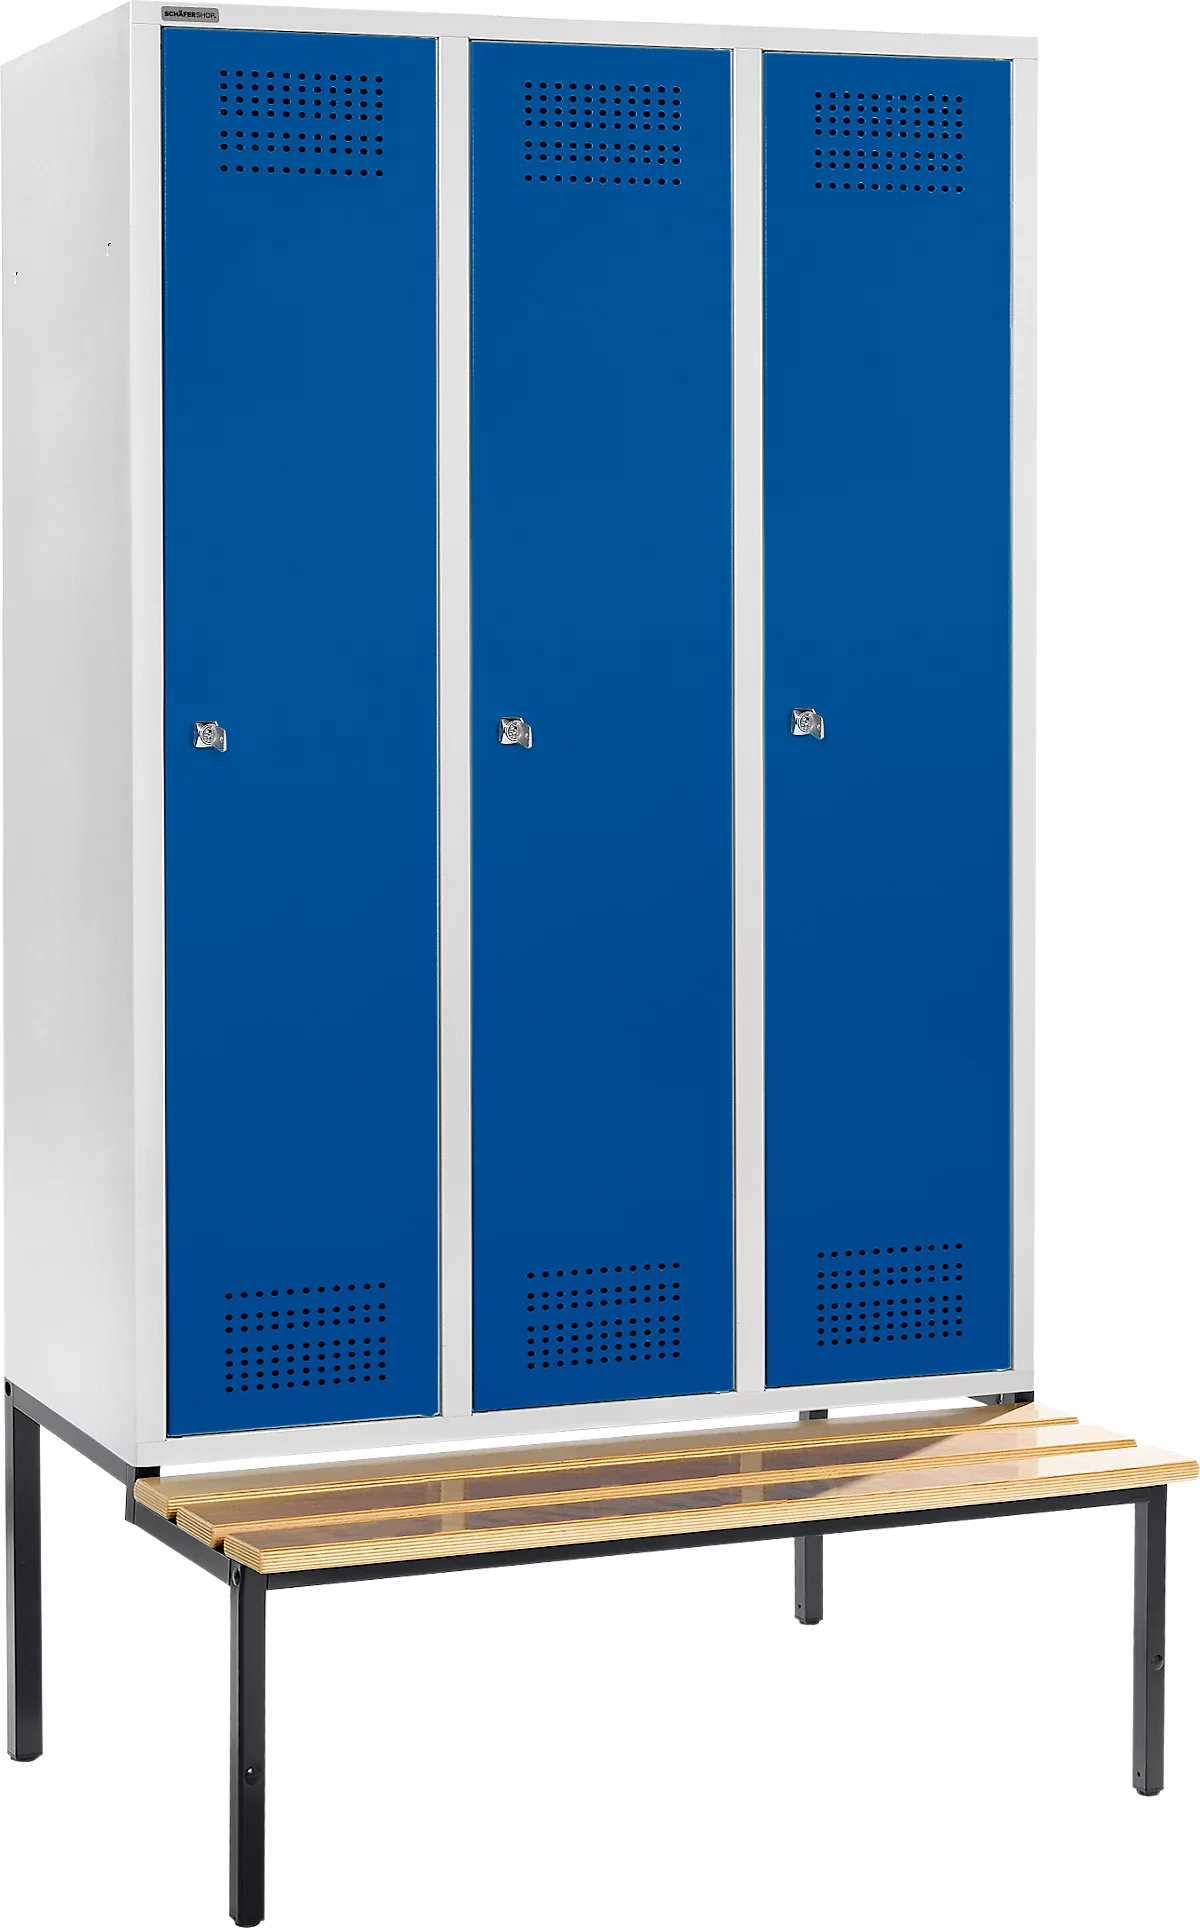 Schäfer Shop Genius Taquilla con banco, 3 compartimentos, anchura compartimento 400 mm, cerradura de cilindro, gris luminoso/azul genciana